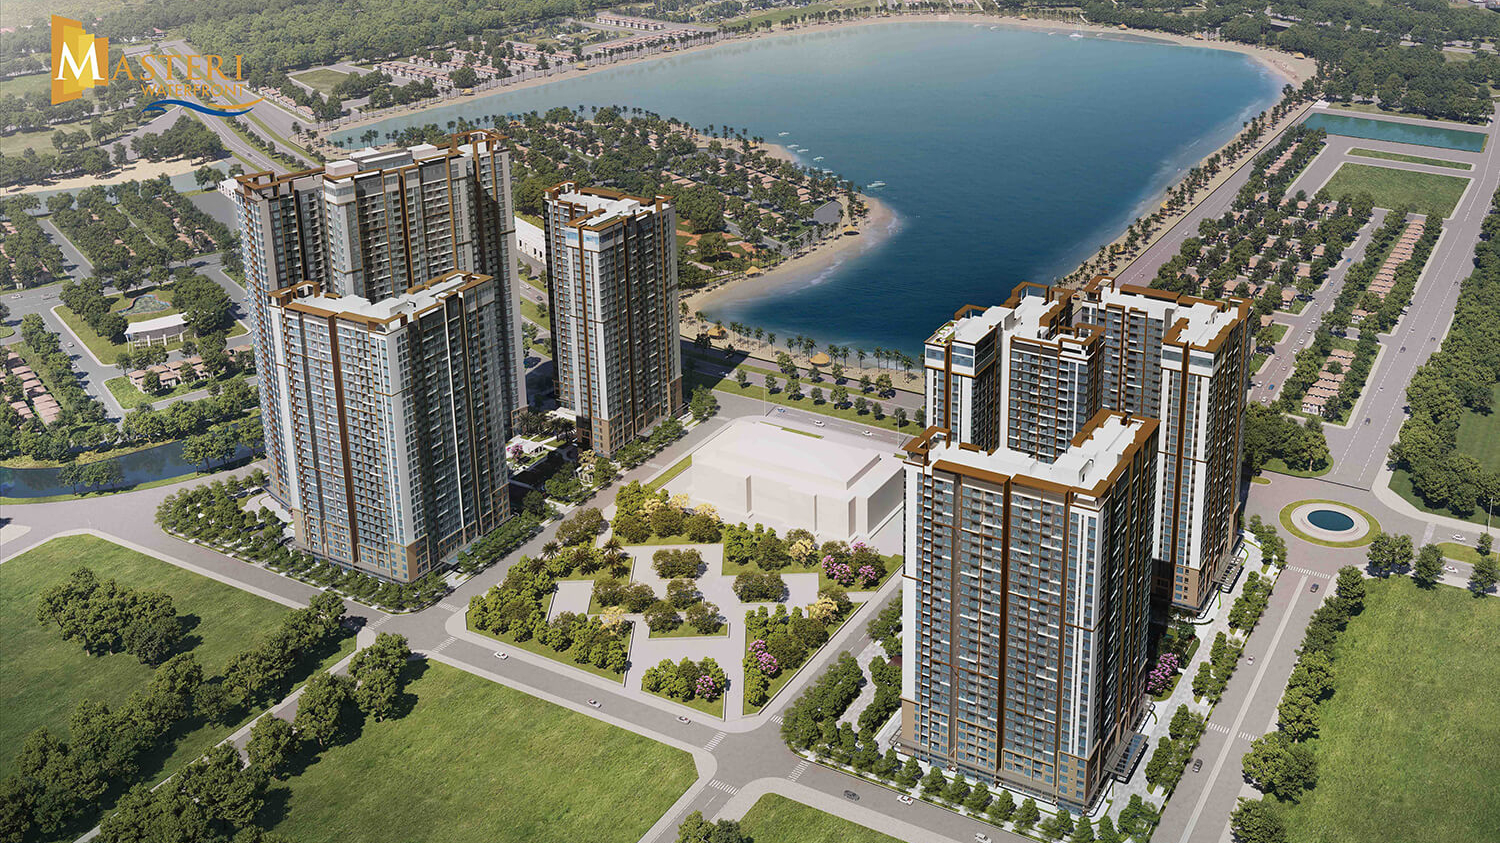 Toàn cảnh dự án Masteri Waterfront với 6 tòa căn hộ ở vị trí trung tâm Ocean Park. Ảnh: Masteri Waterfront